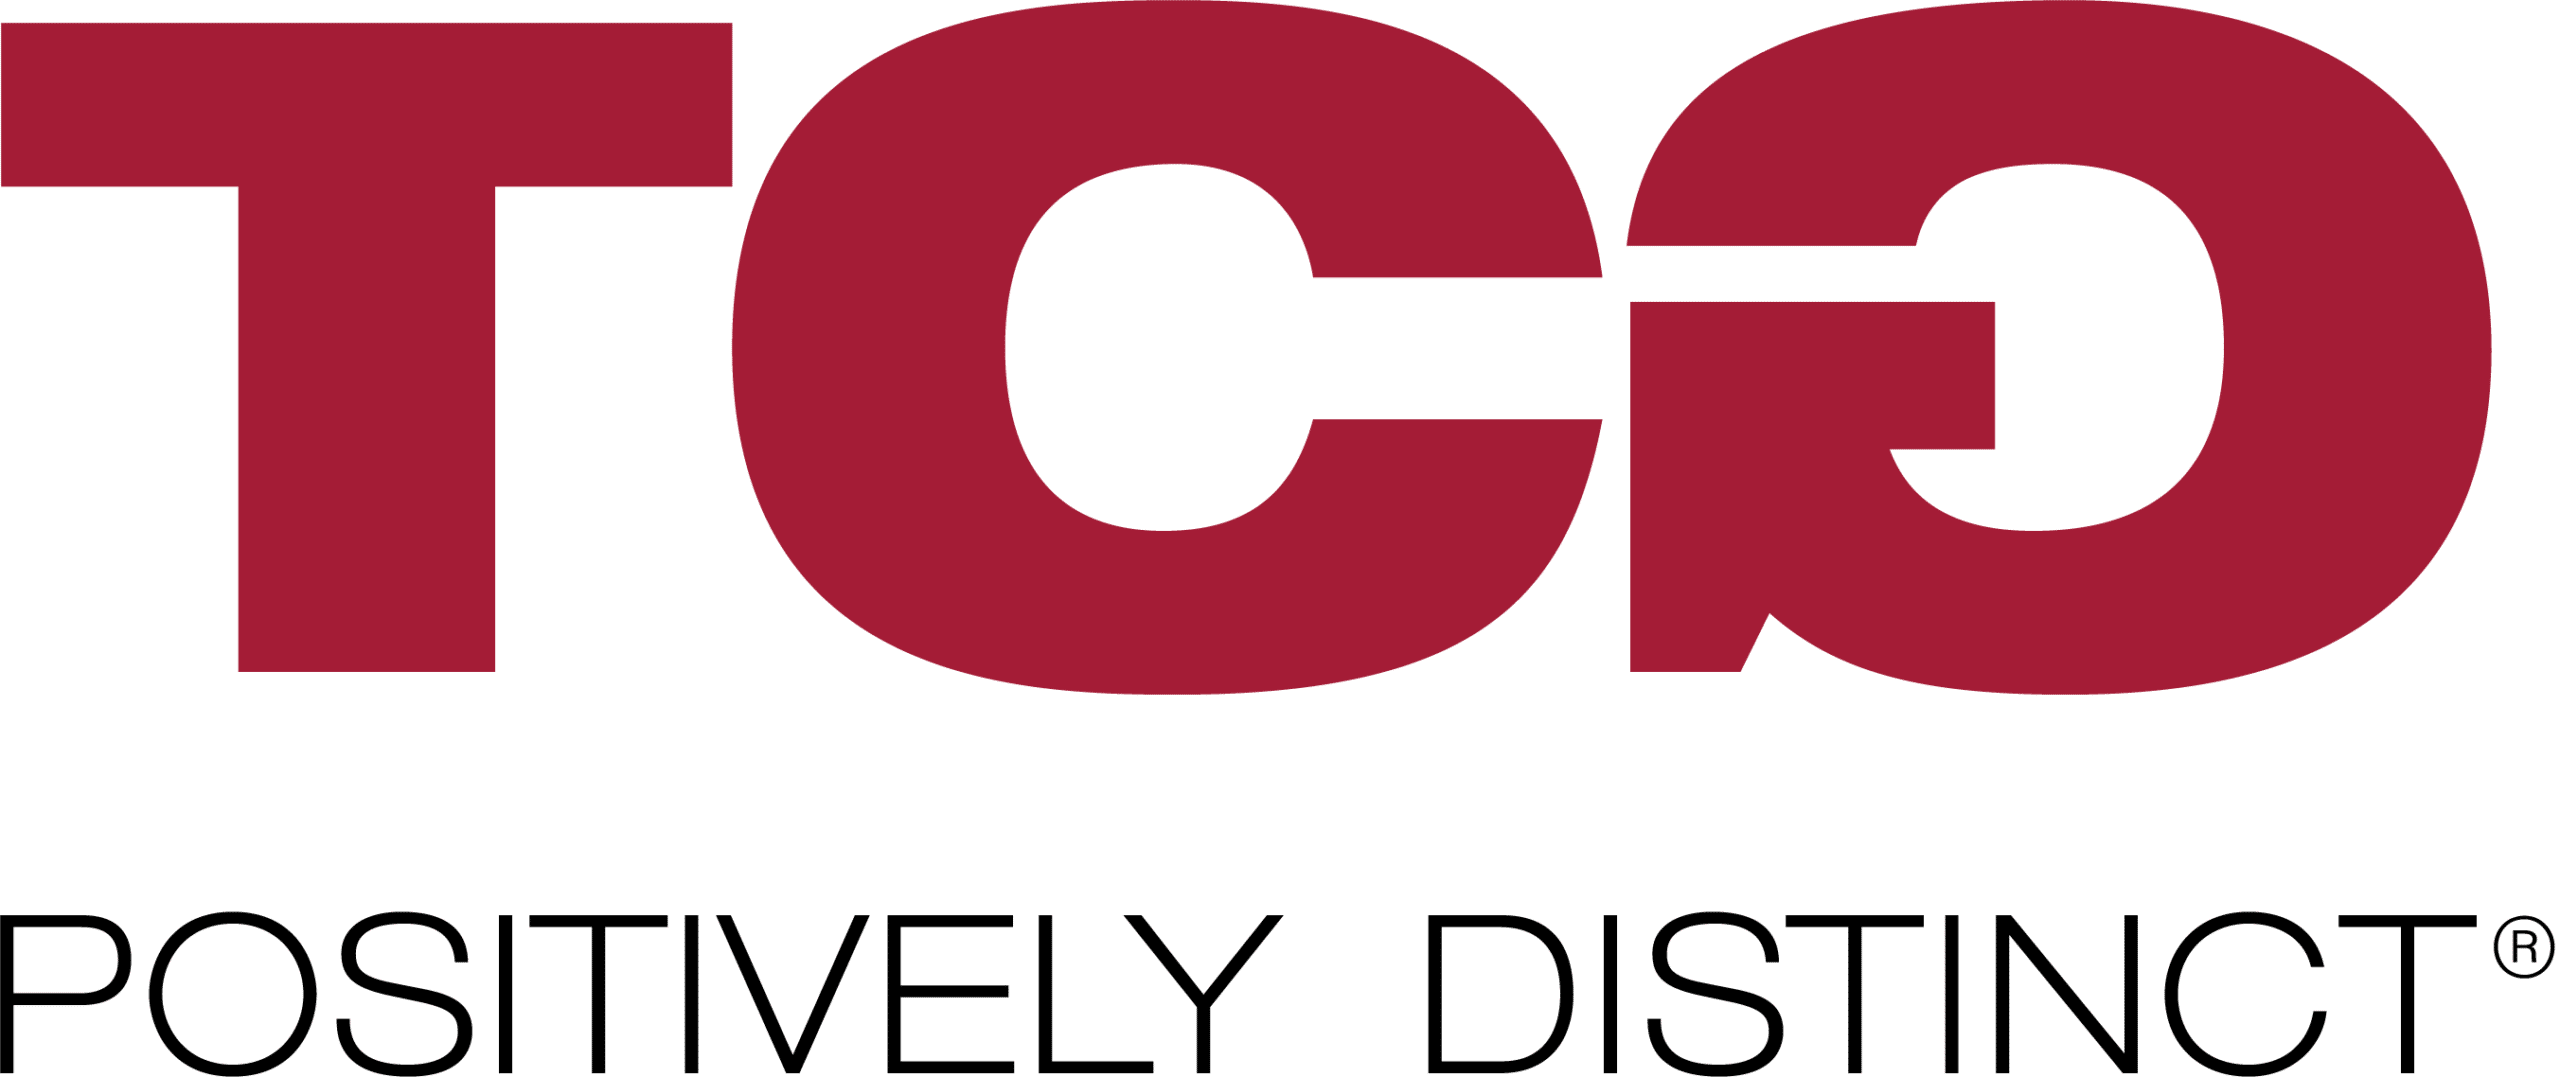 TCG, Inc. logo